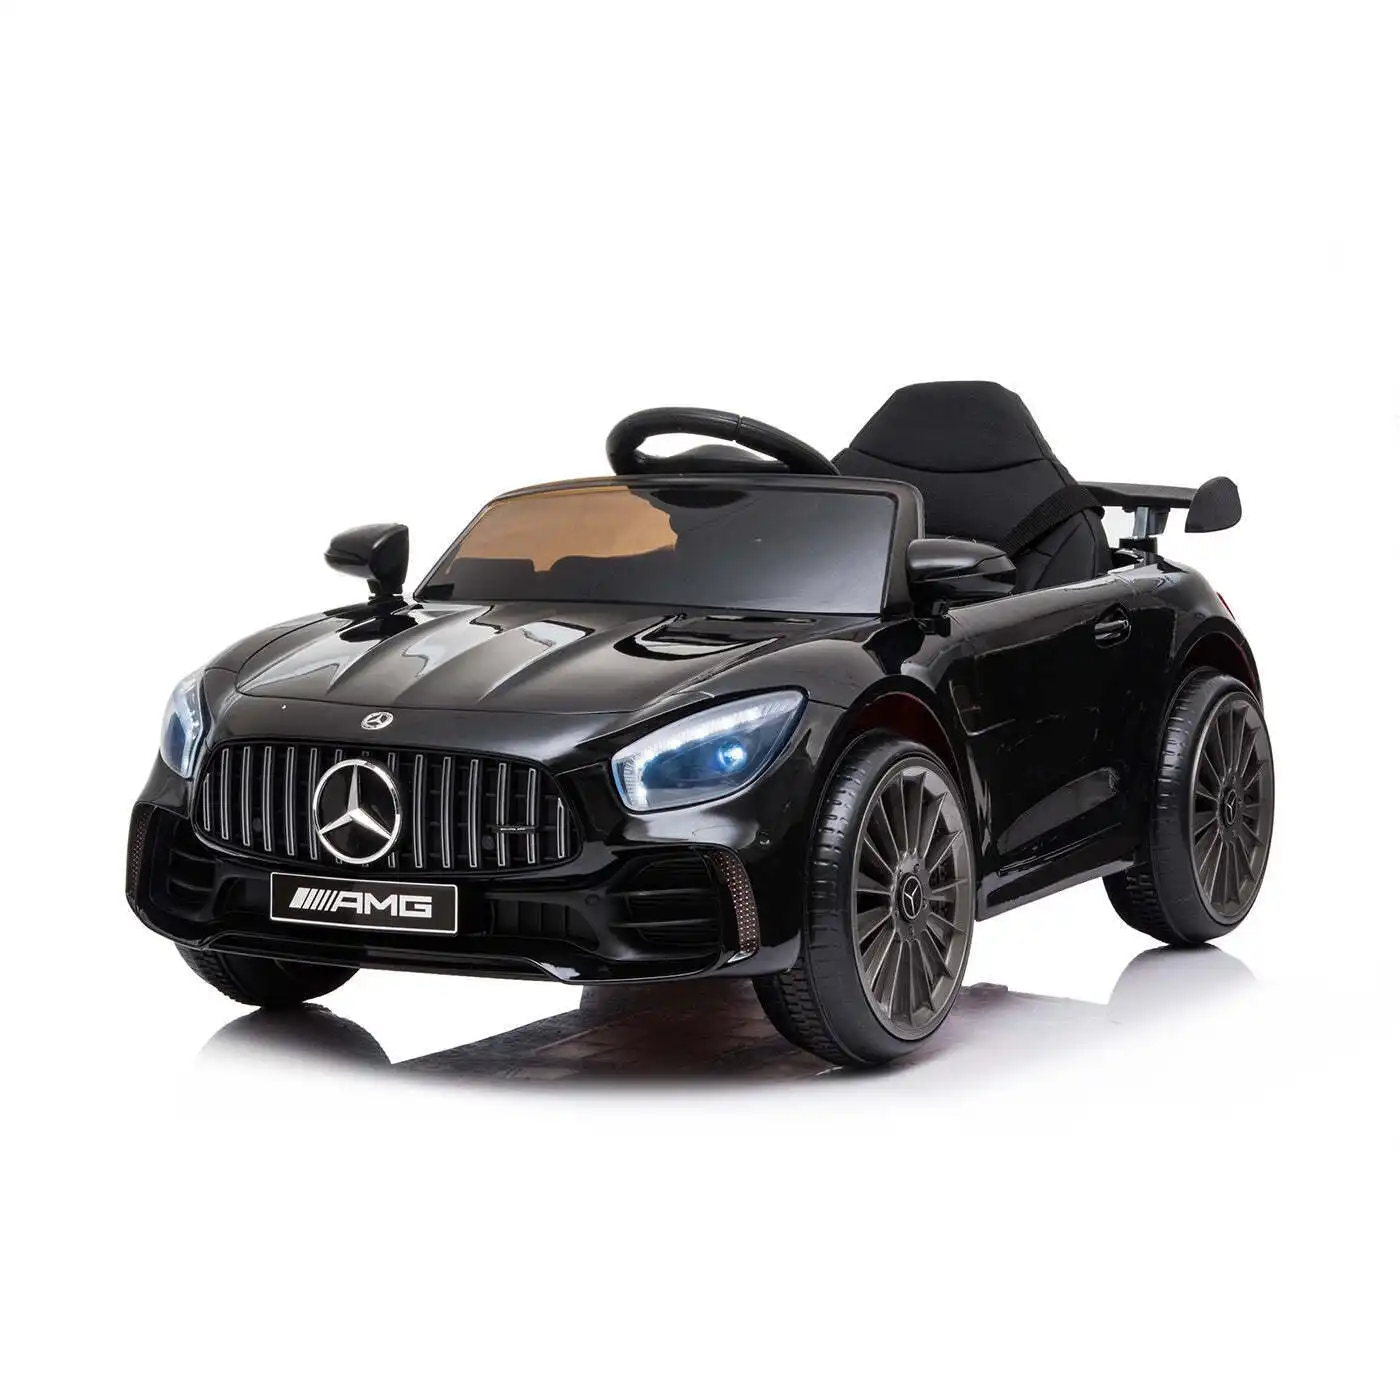 Licensed Mercedes GTR Replica Ride-on Car for Children (Black)